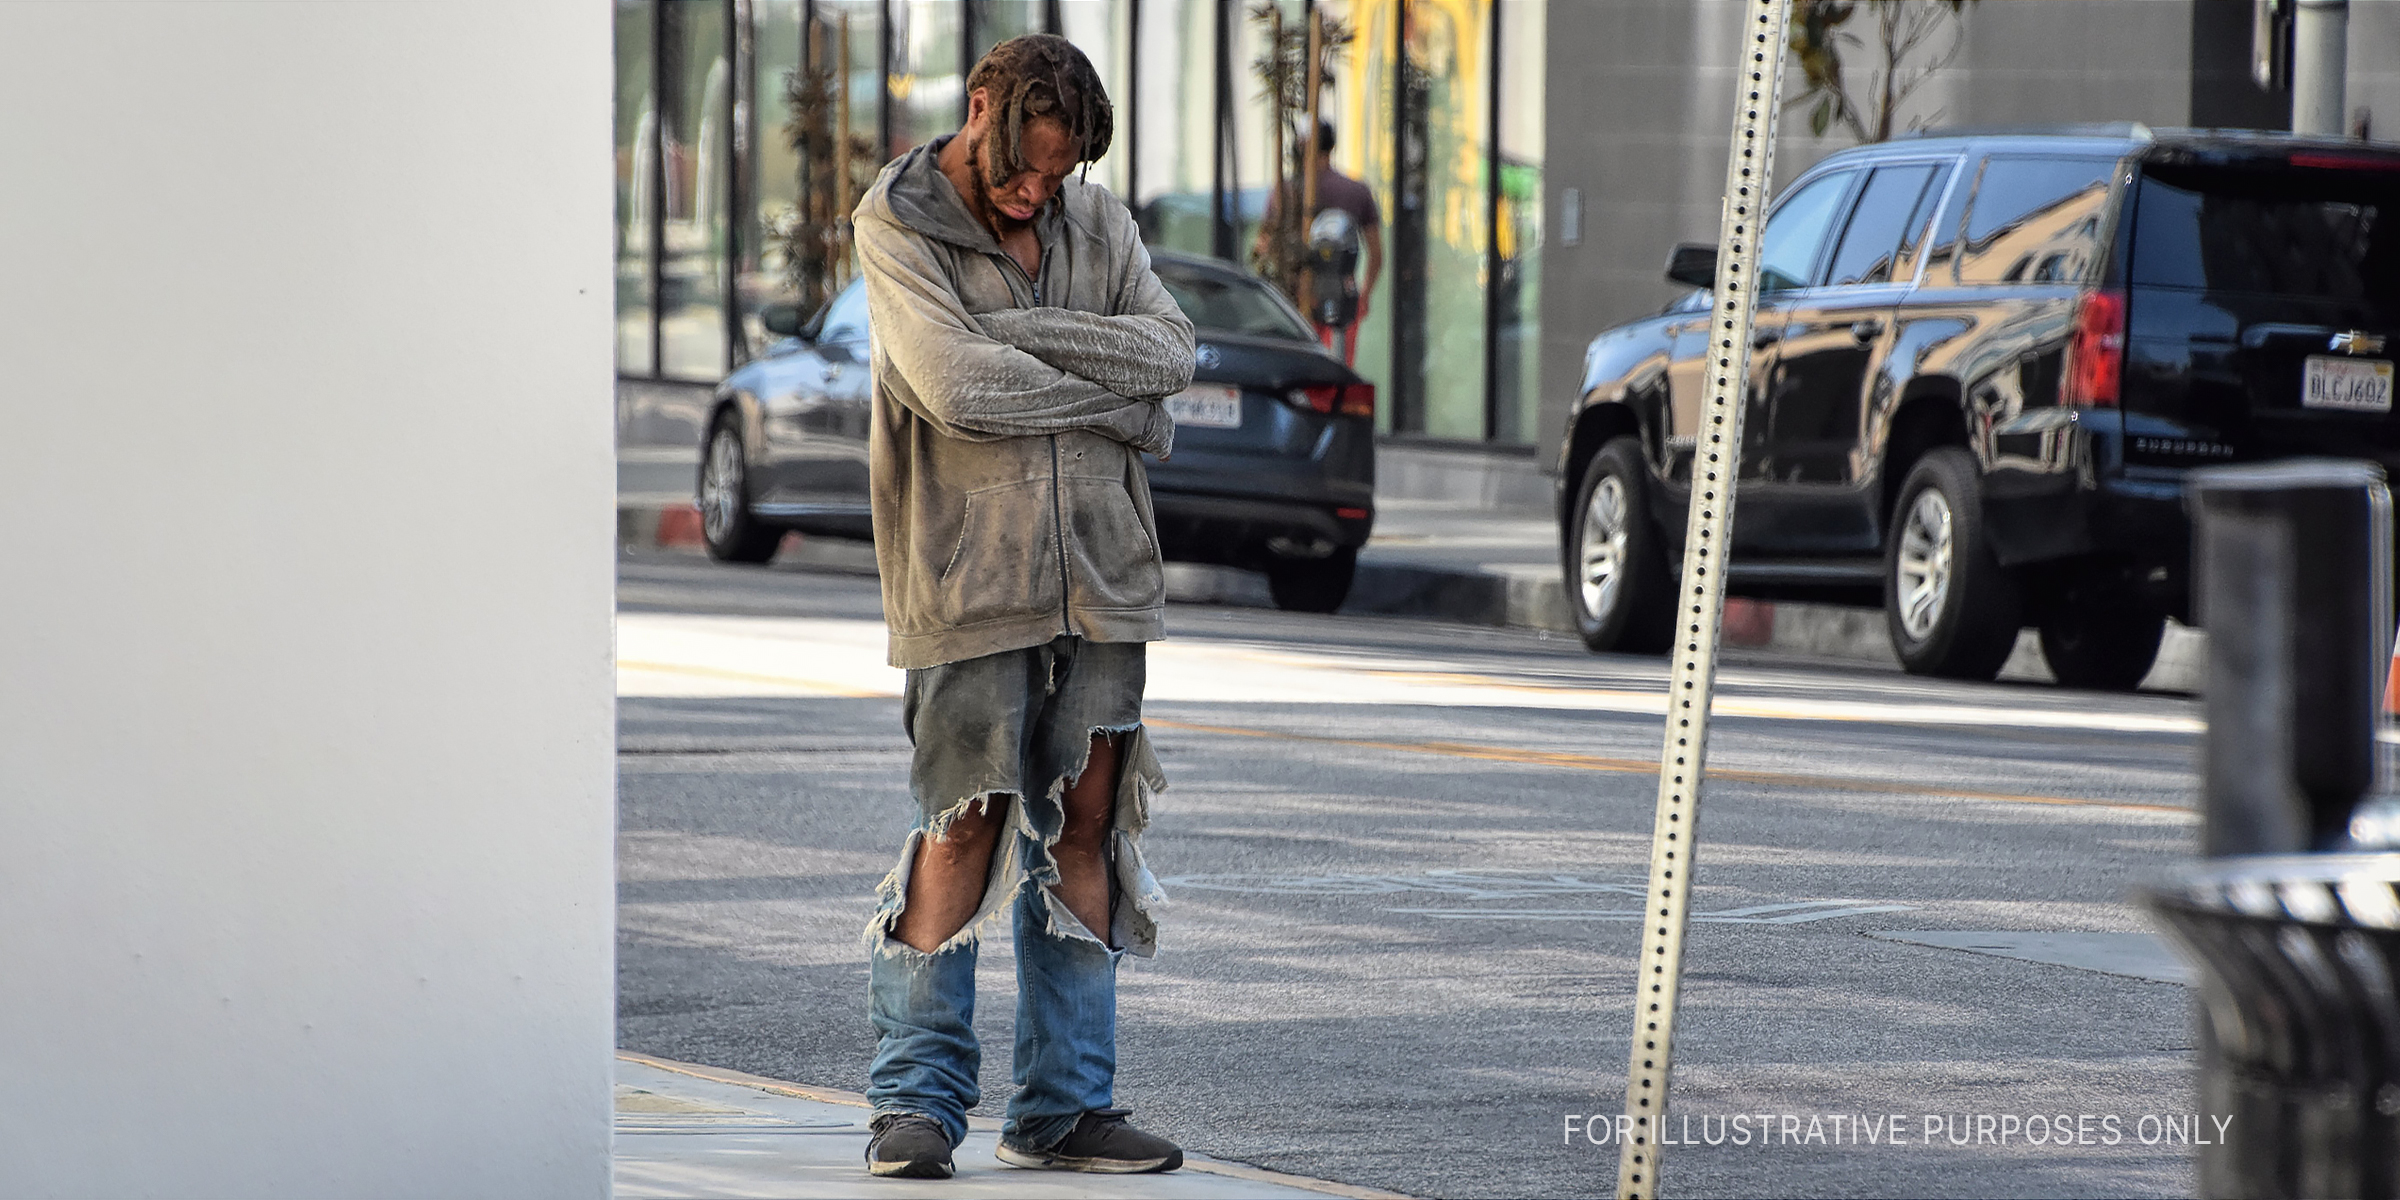 Beggar standing in street | Source: Flickr